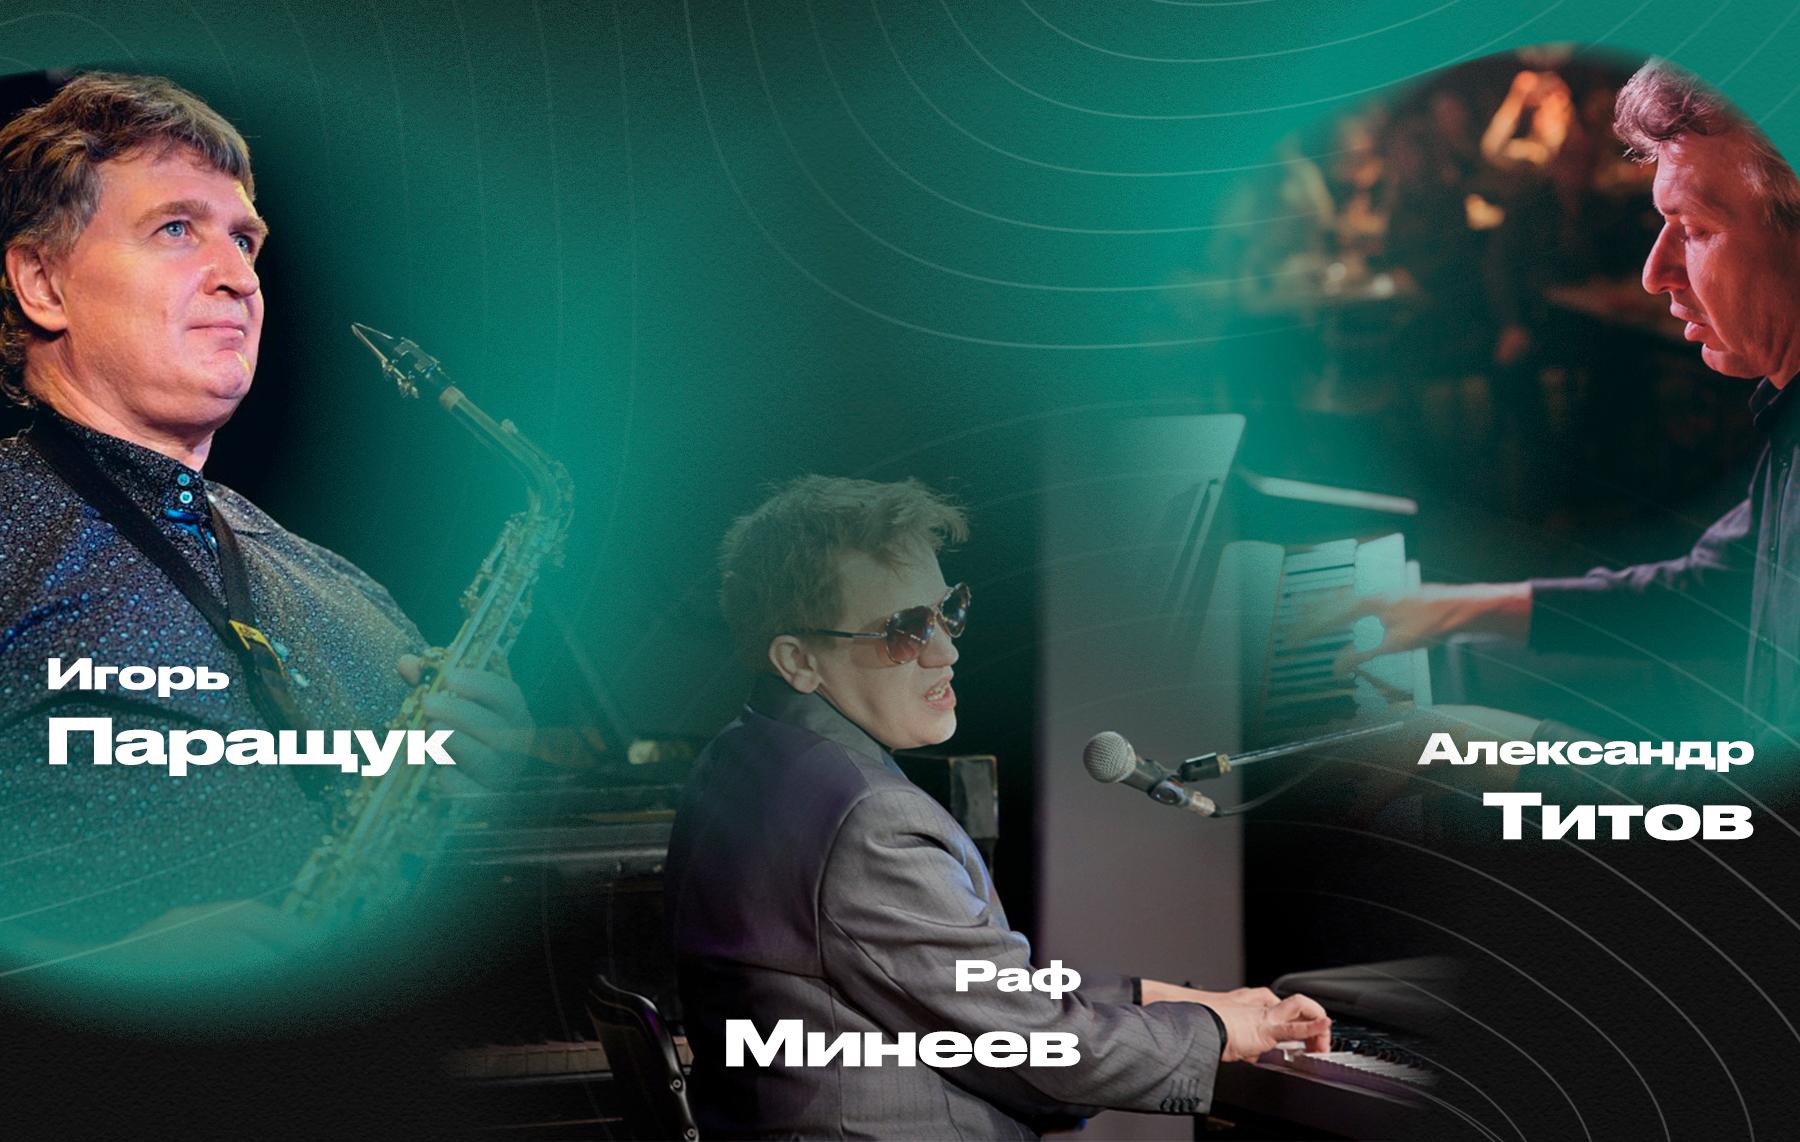 Классика джаза от Александра Титова, Рафа Минеева и Игоря Паращука